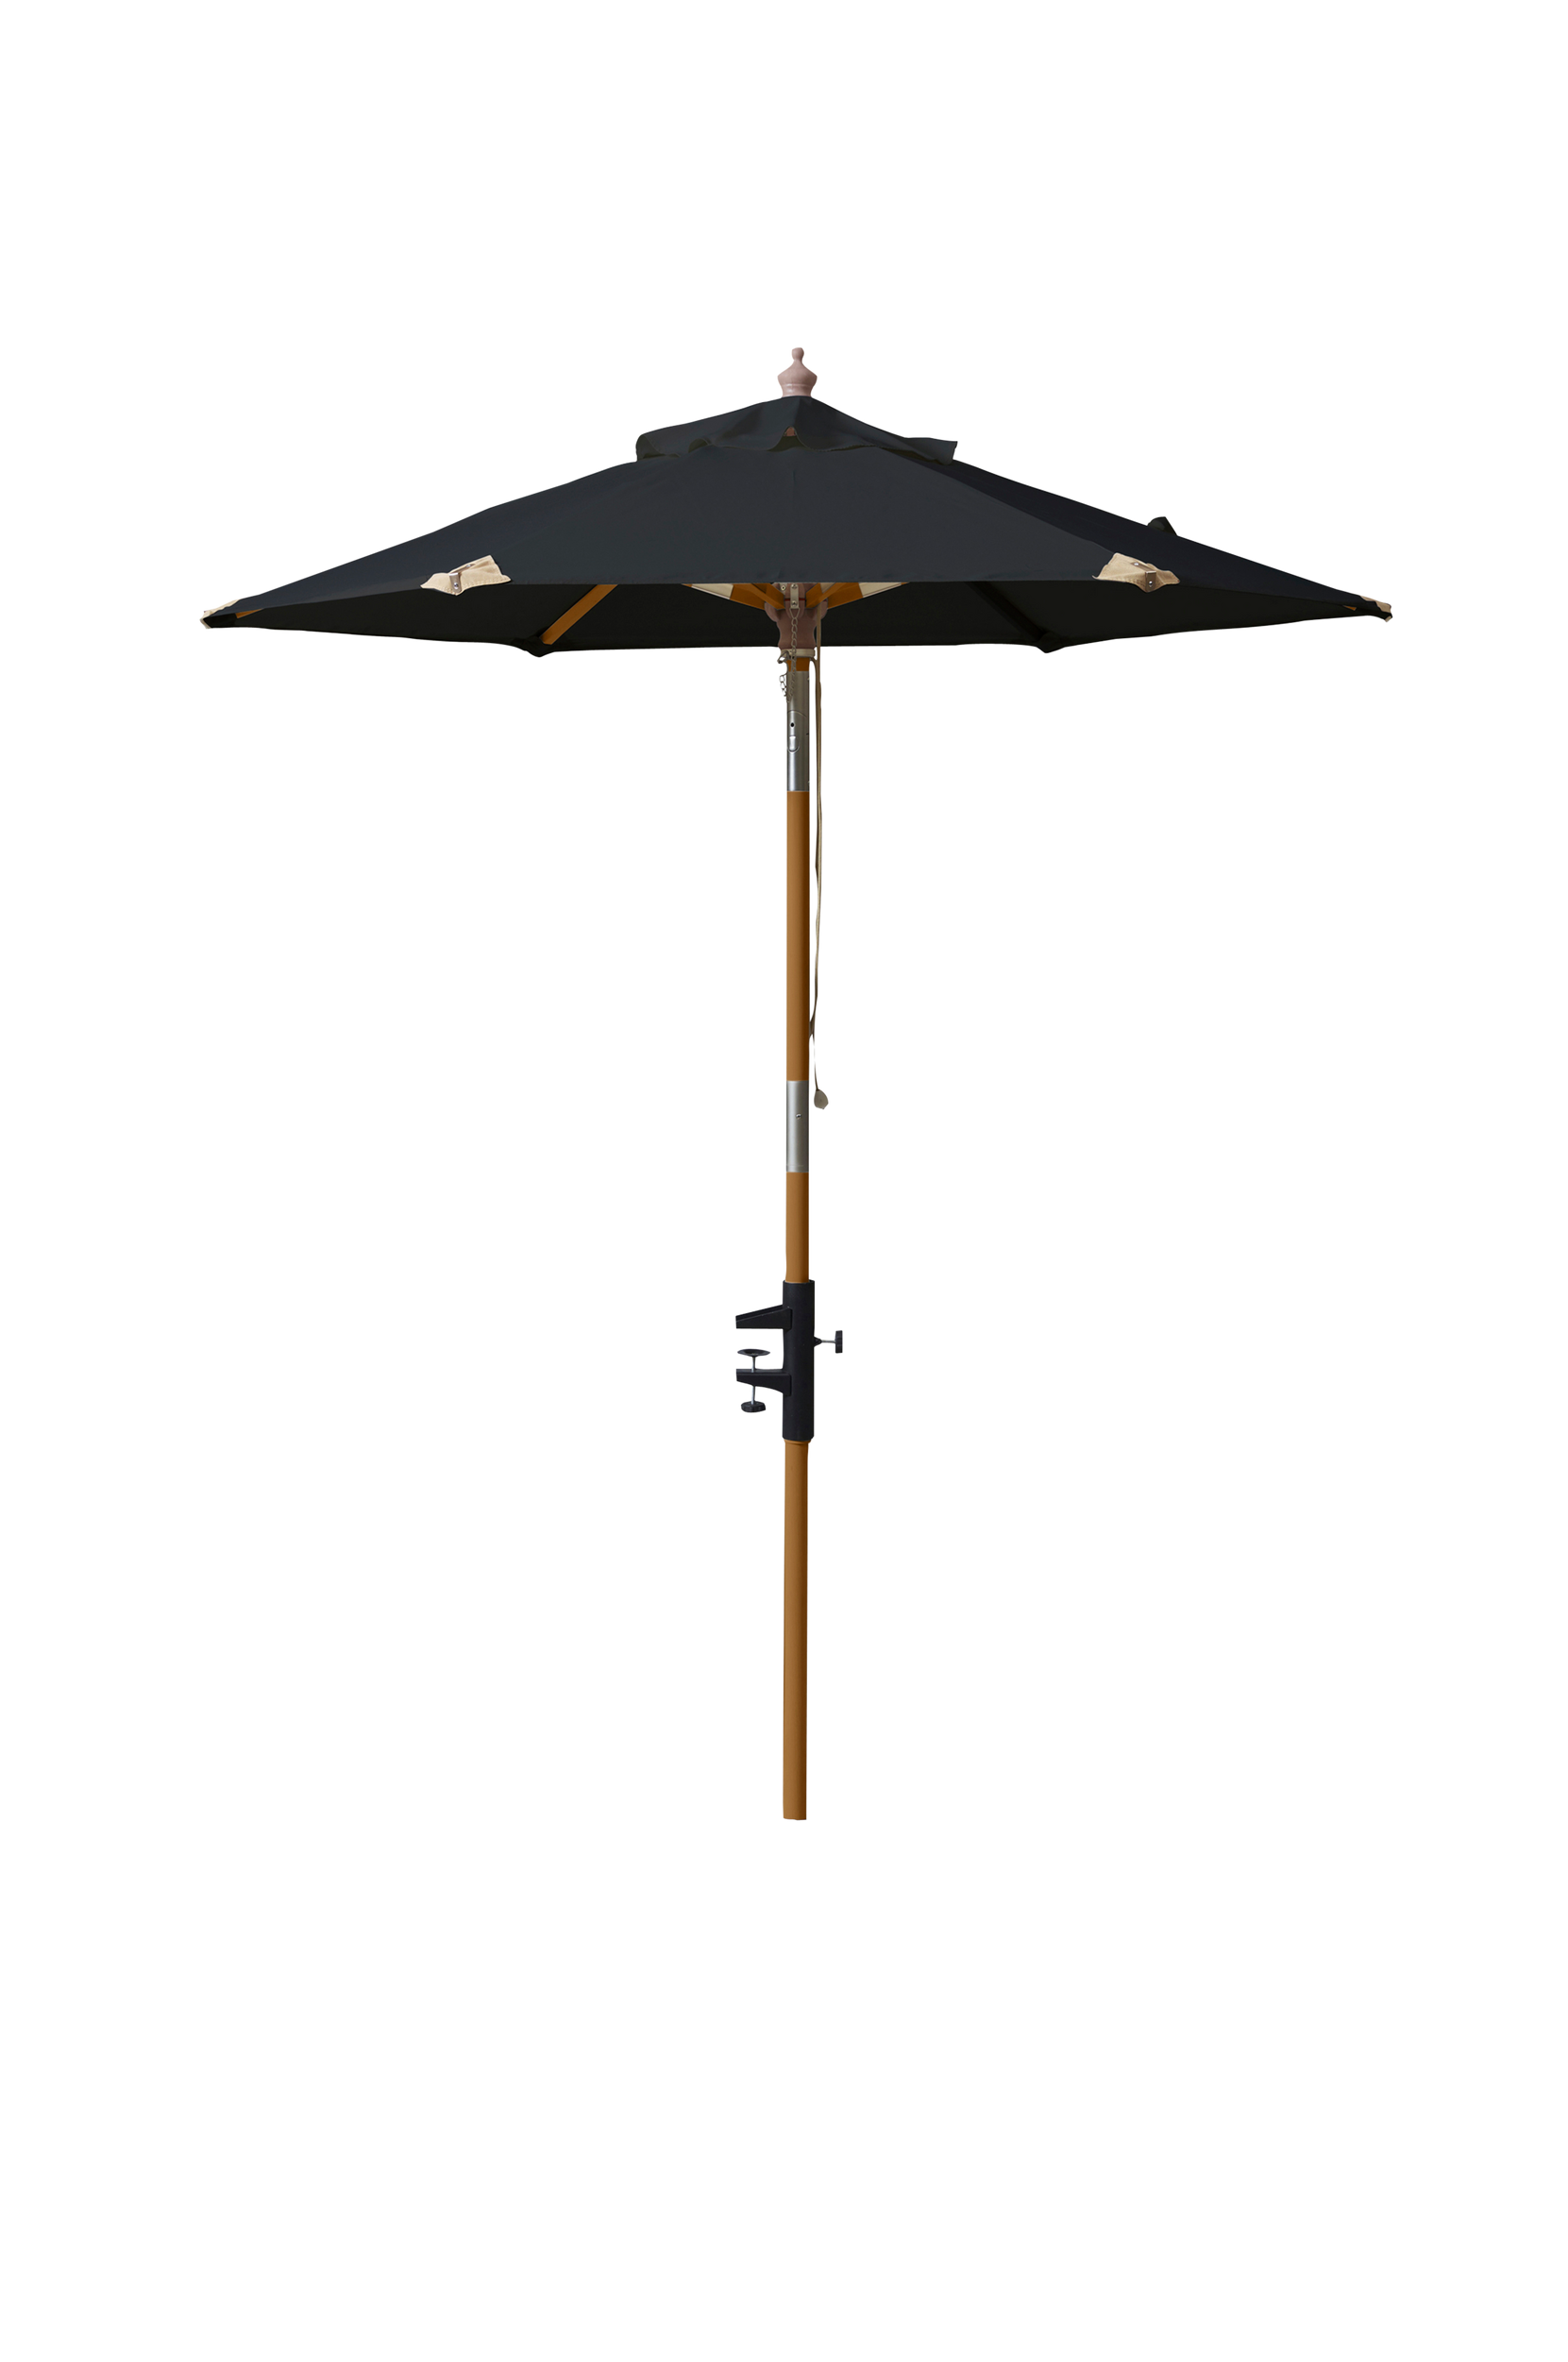 Aurinkovarjo (parveke) polyesteriä, halkaisija 1,8 m